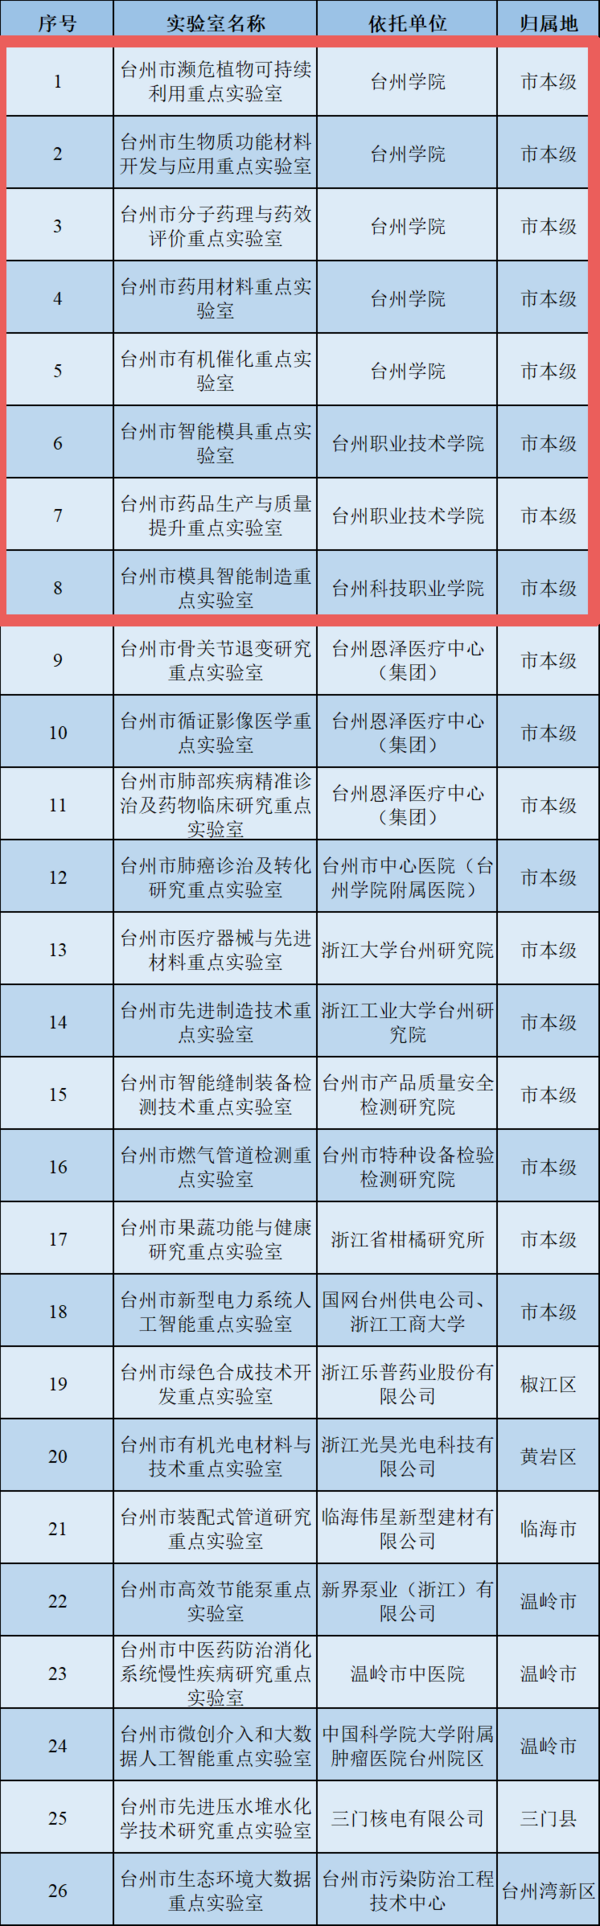 浙江台州8家高校实验室入选市级重点实验室